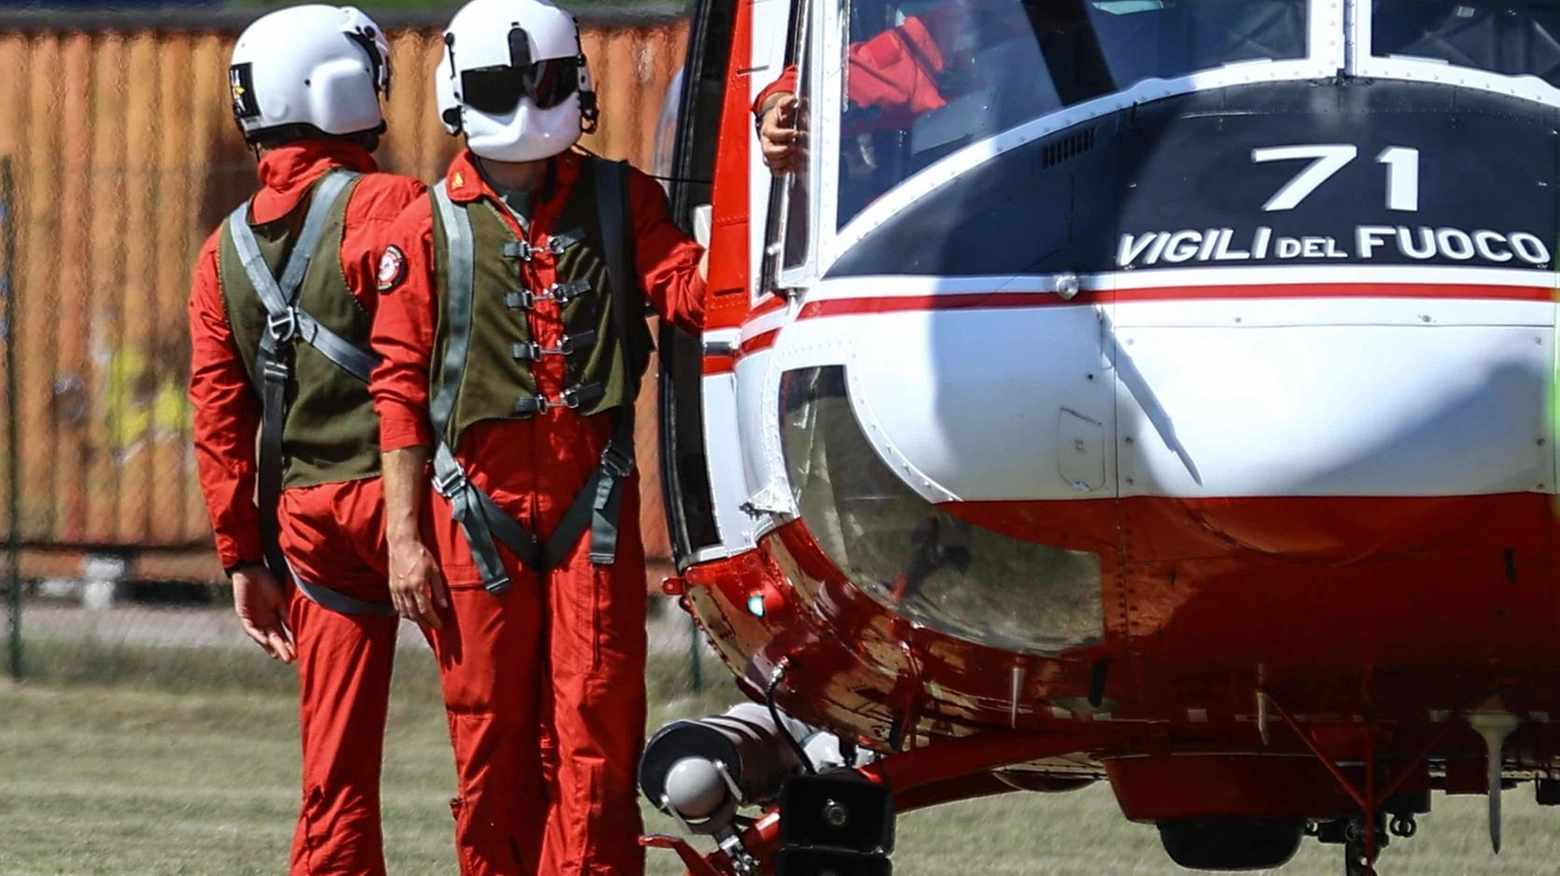 Turisti in difficoltà sulle montagne della Riviera: due incidenti in pochi giorni, con interventi di soccorso e elicottero. Escursionisti feriti trasportati in ospedale.